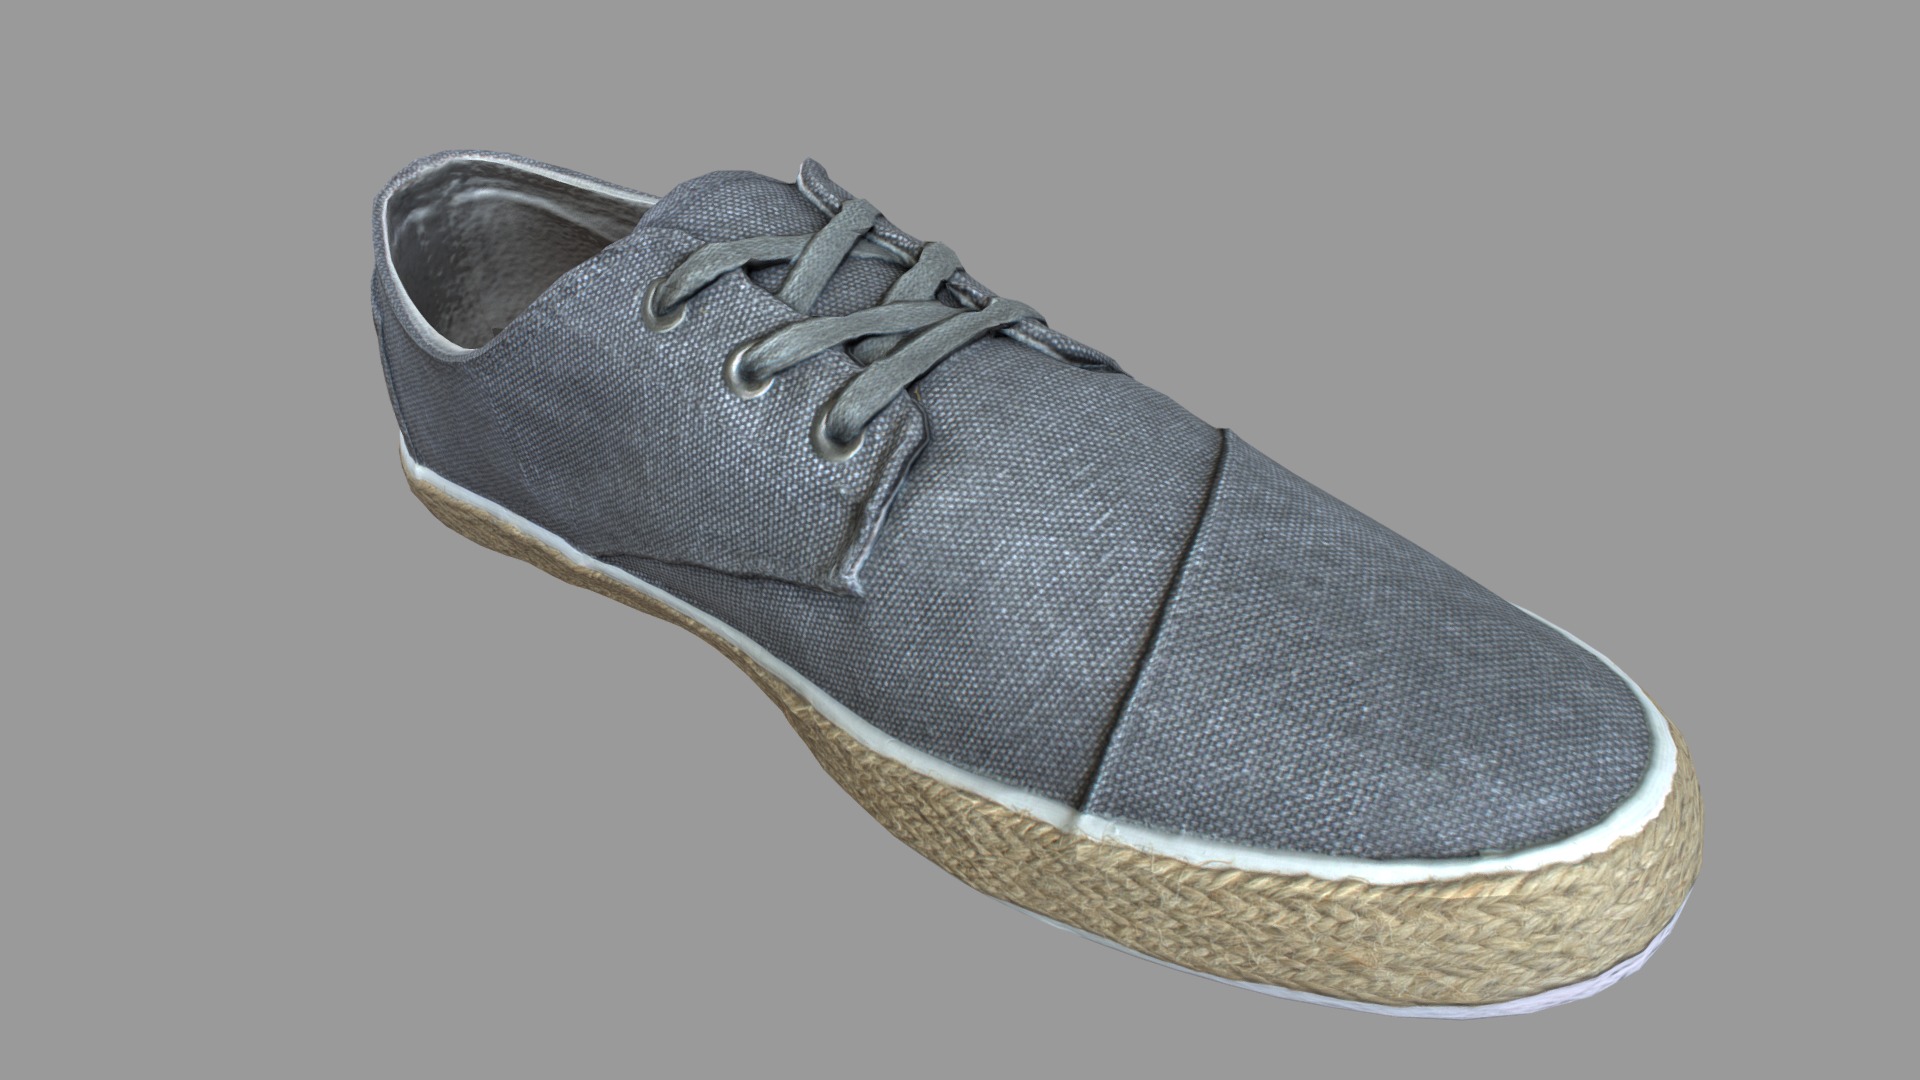 3D model Shoe low poly 3D model - This is a 3D model of the Shoe low poly 3D model. The 3D model is about a close up of a shoe.